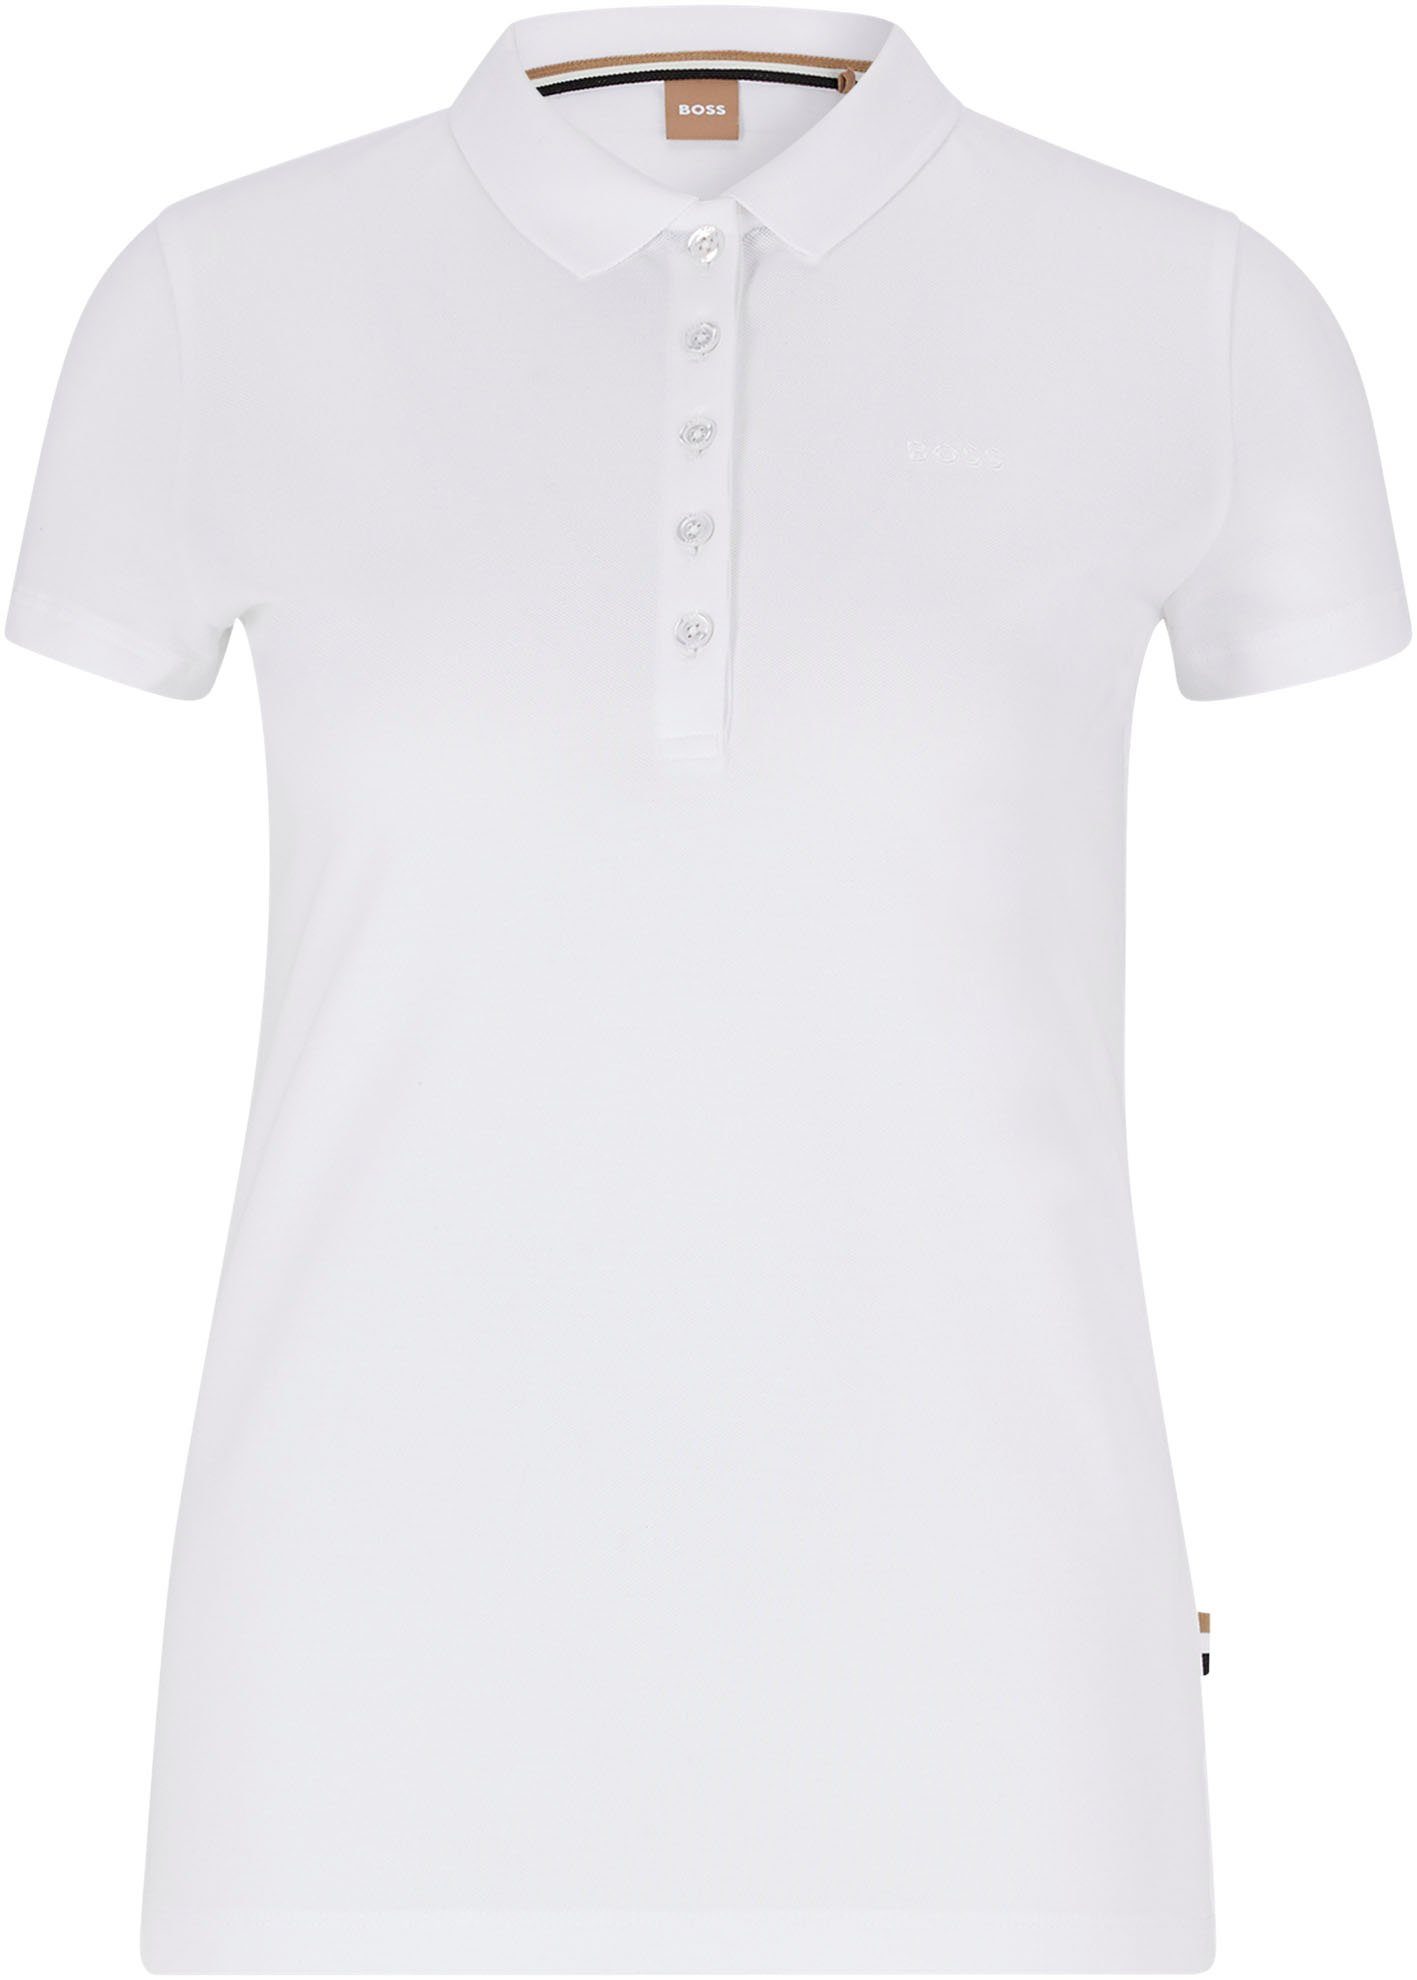 BOSS ORANGE Poloshirt C_Epola mit White BOSS-Stickerei